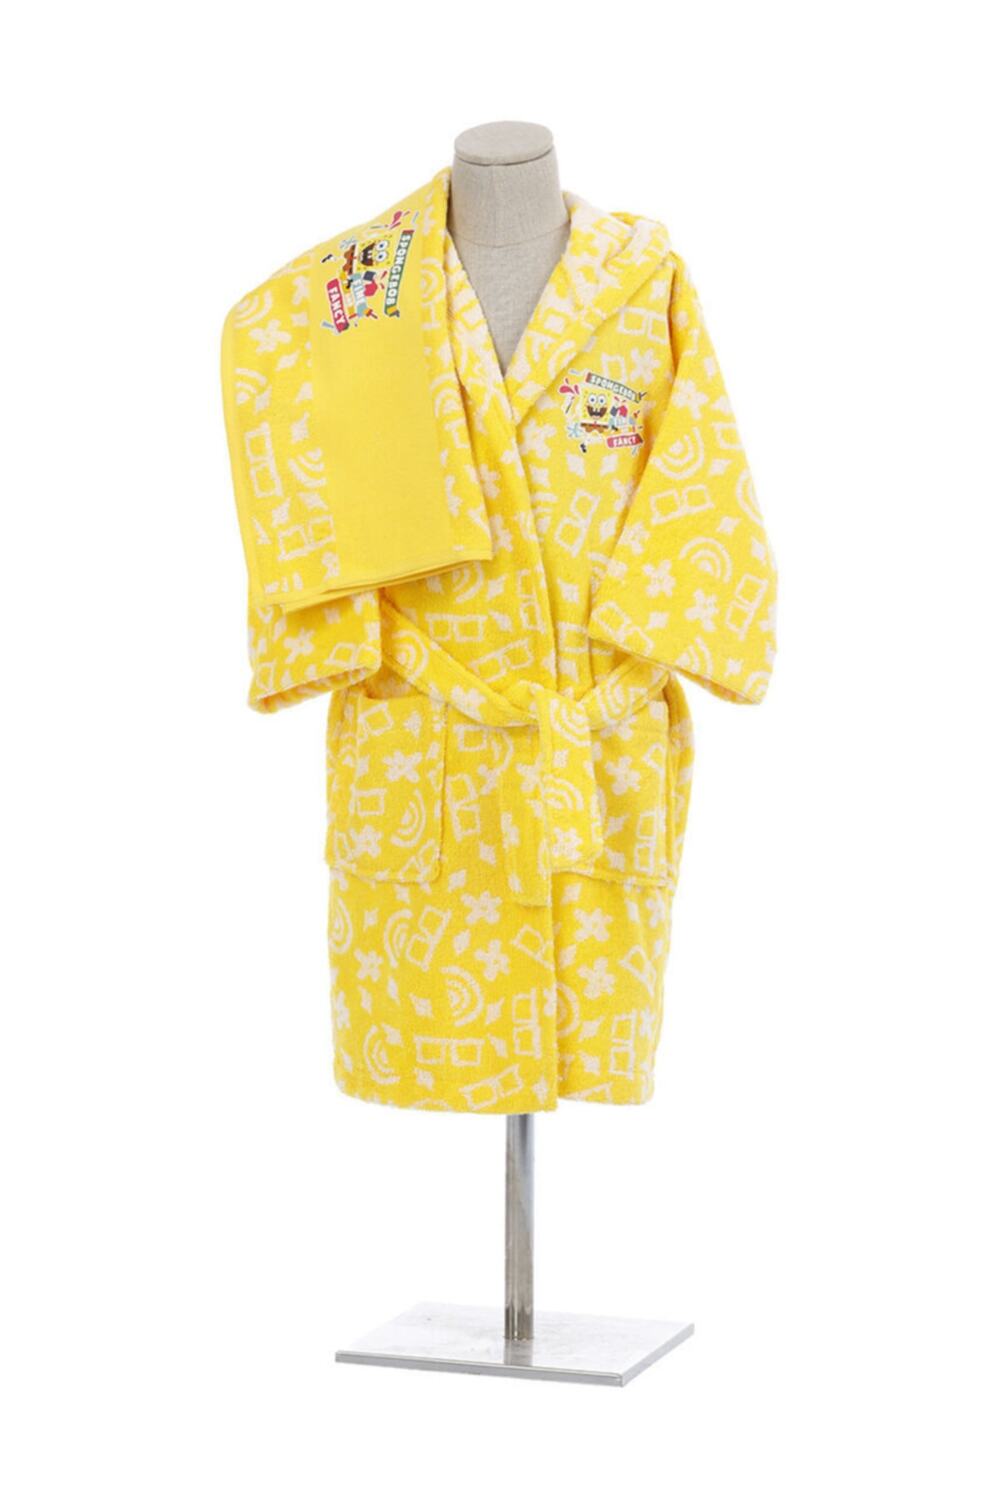 Детский банный халат Sponge Bob цвет: желтый (11-12 лет), размер 11-12 лет ozd773851 Детский банный халат Sponge Bob цвет: желтый (11-12 лет) - фото 1